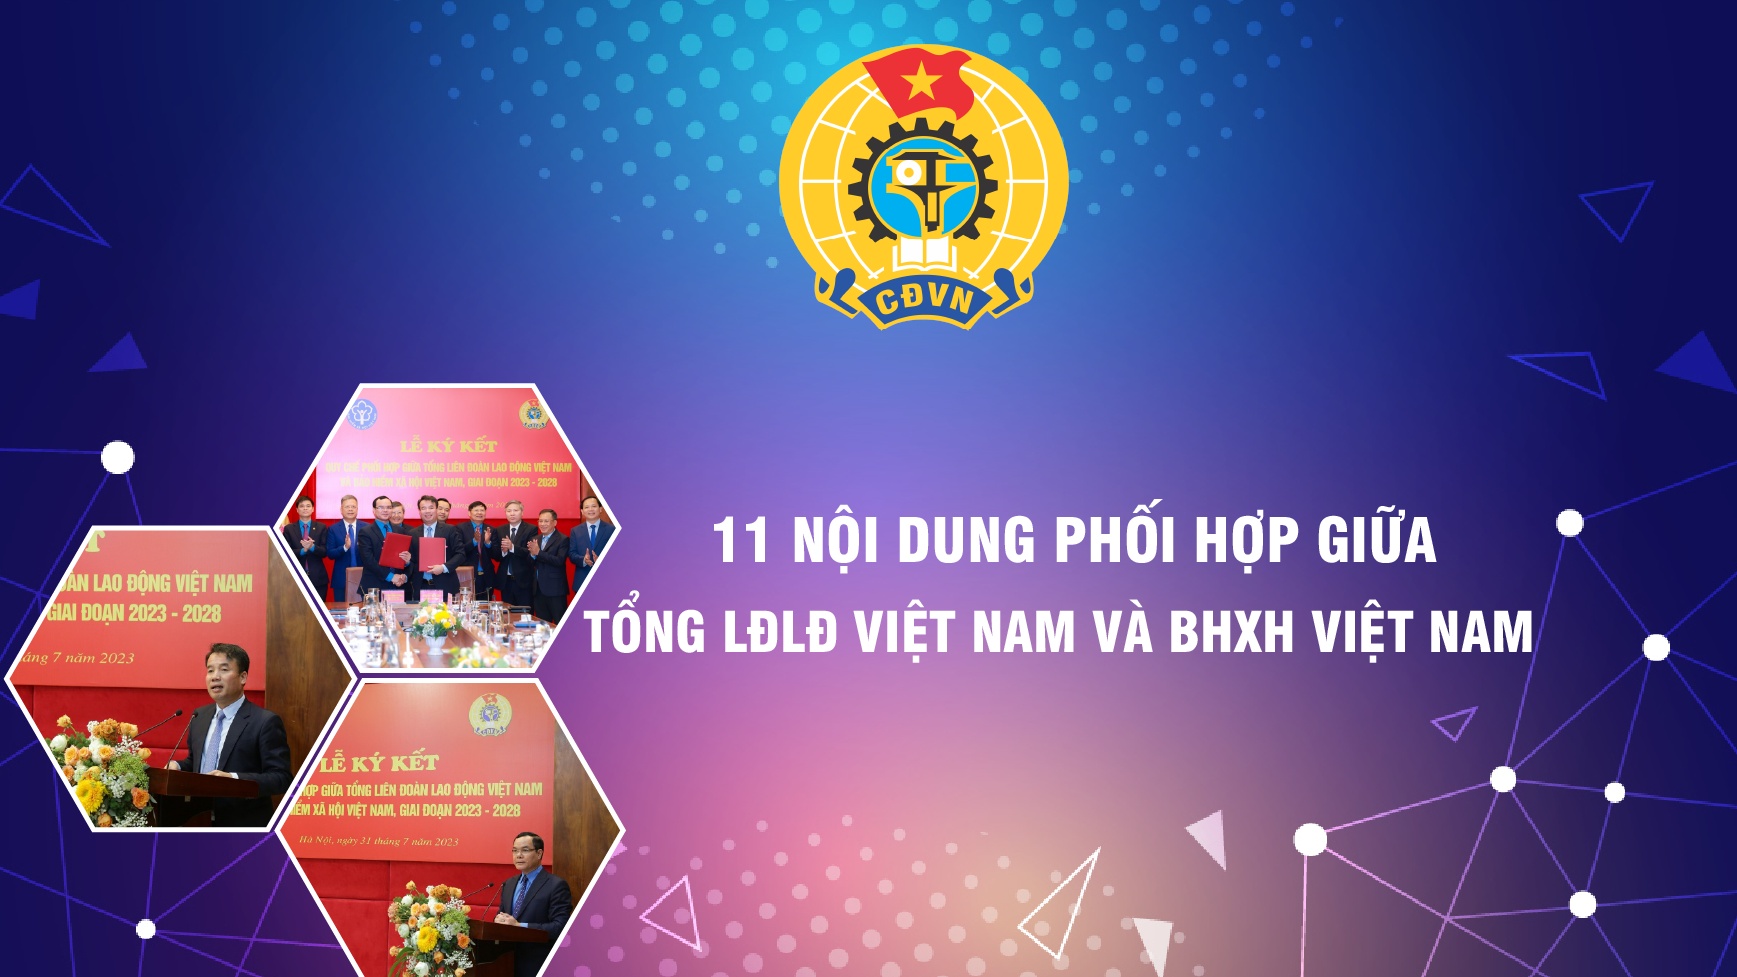 11 nội dung phối hợp giữa Tổng LĐLĐ Việt Nam và BHXH Việt Nam